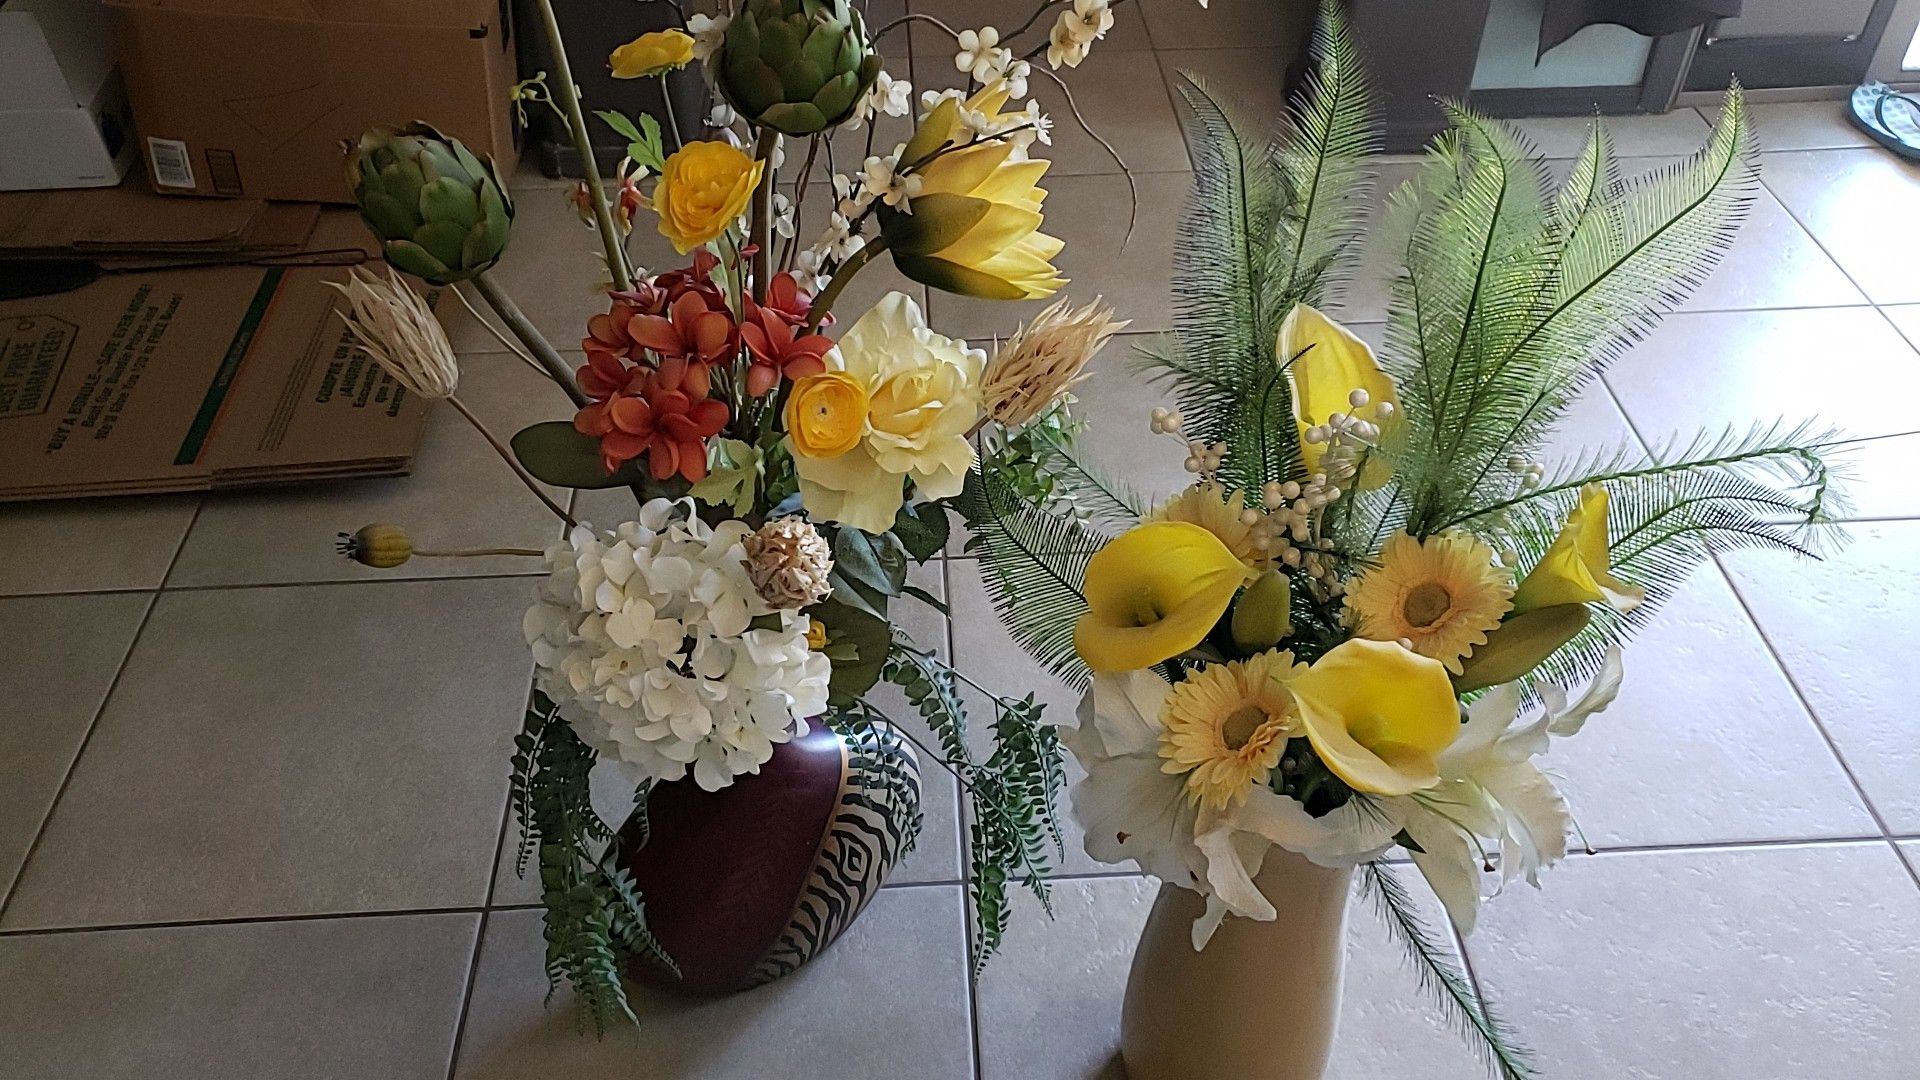 2 flower arrangements in vases